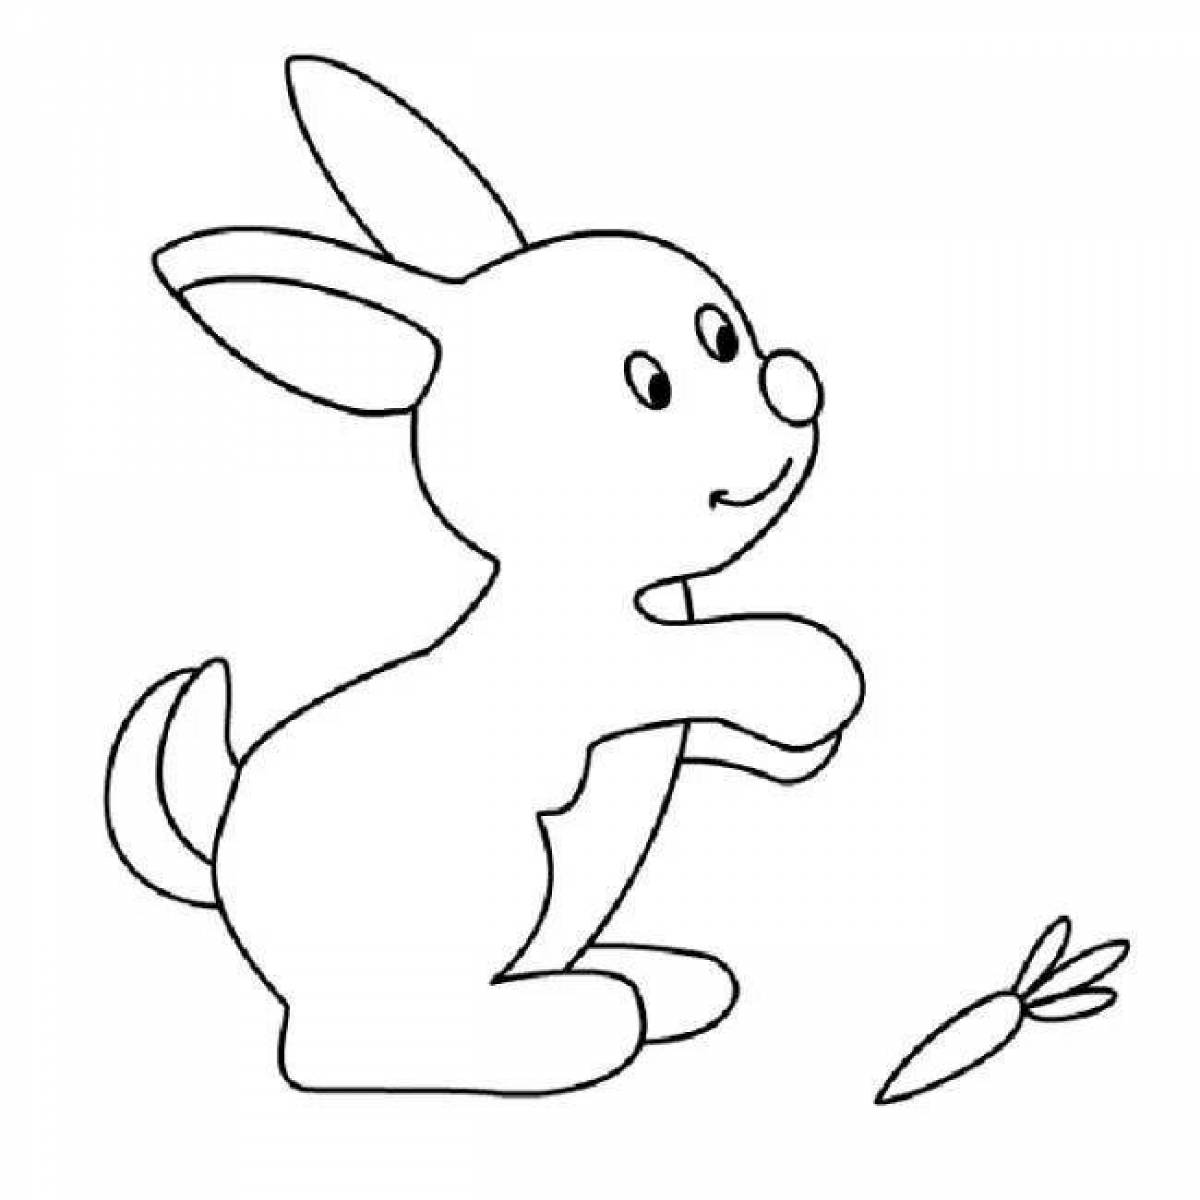 Нечеткий контур кролика-раскраски